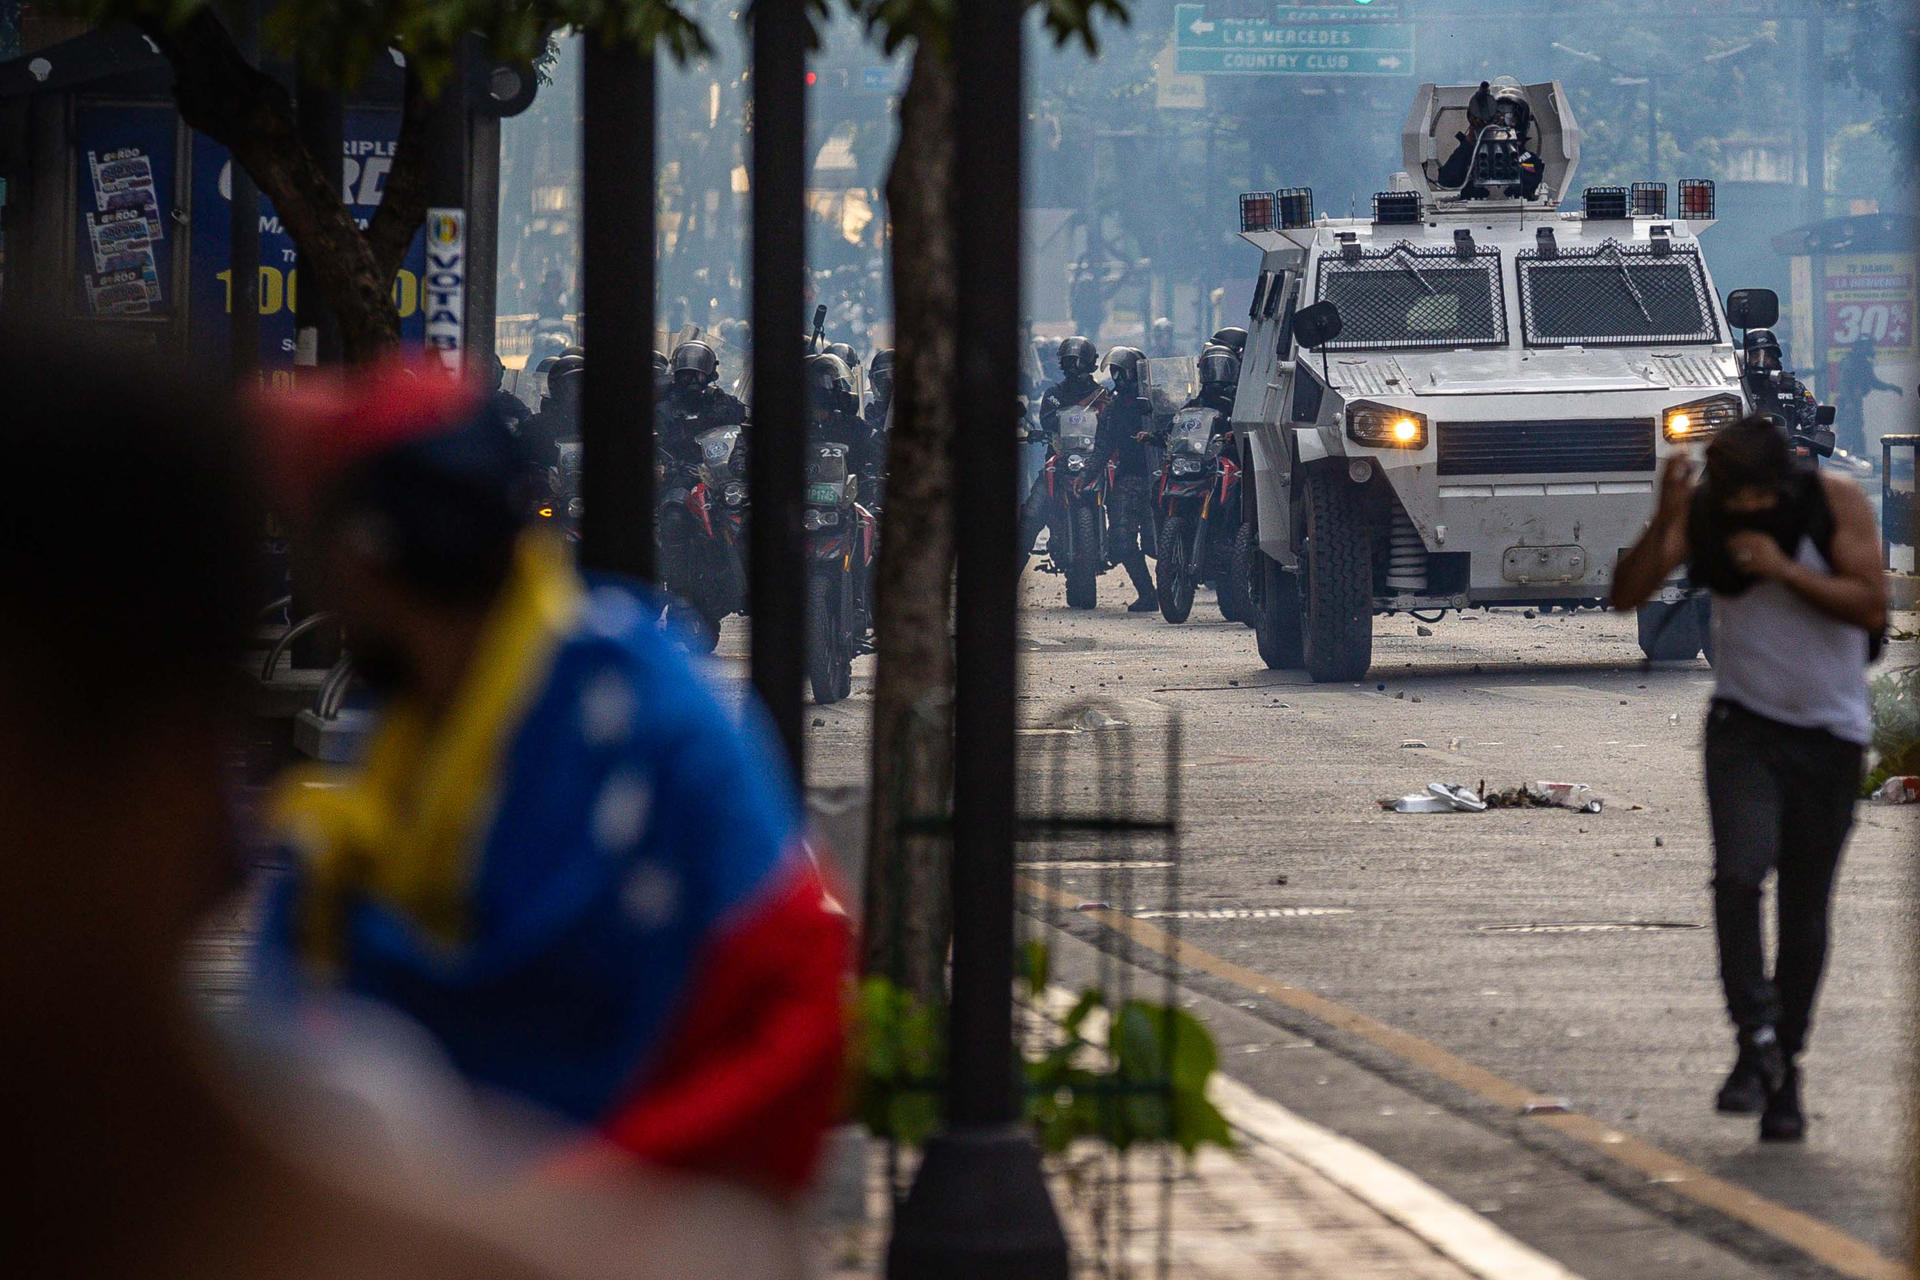 Encuesta Nacional de Hospitales confirmó 84 heridos y 11 fallecidos durante protestas en Venezuela